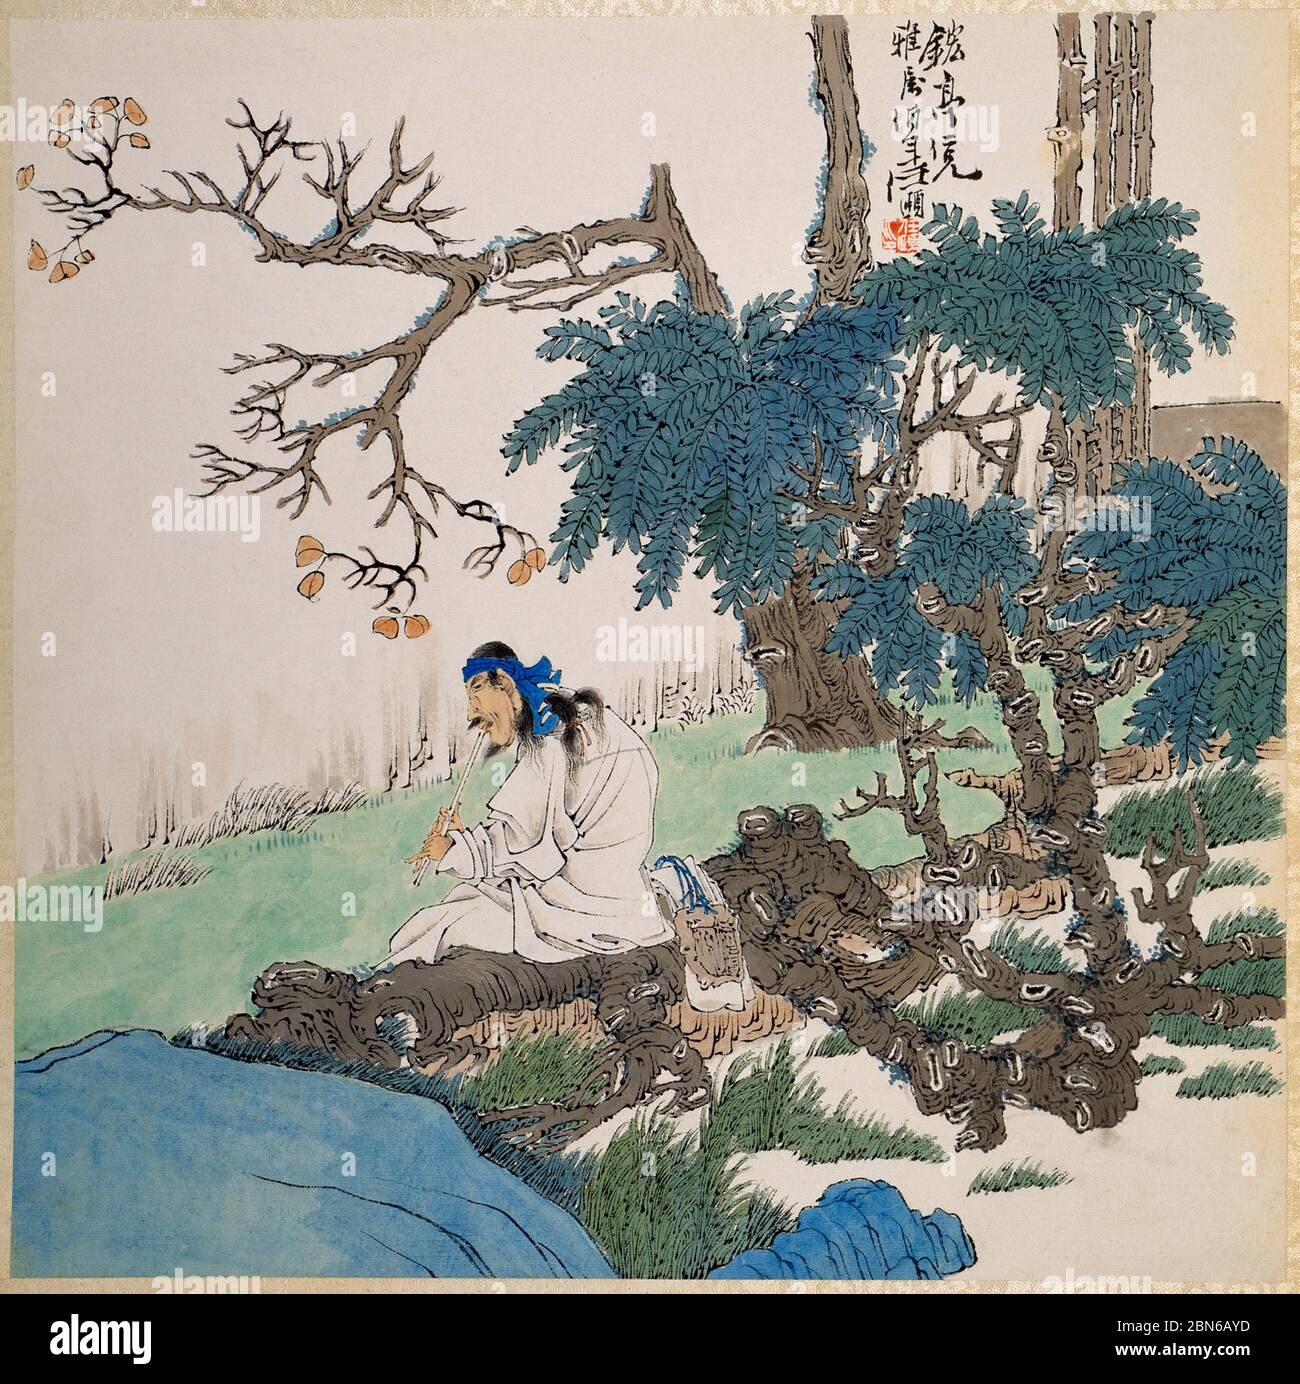 Chine: "Jouer à la flûte". Peinture à l'encre par Ren Yi (1840-1896), c. 1860-1880. REN Yi (1840-1896), également connu sous le nom de Ren Bonian, était un peintre chinois Banque D'Images